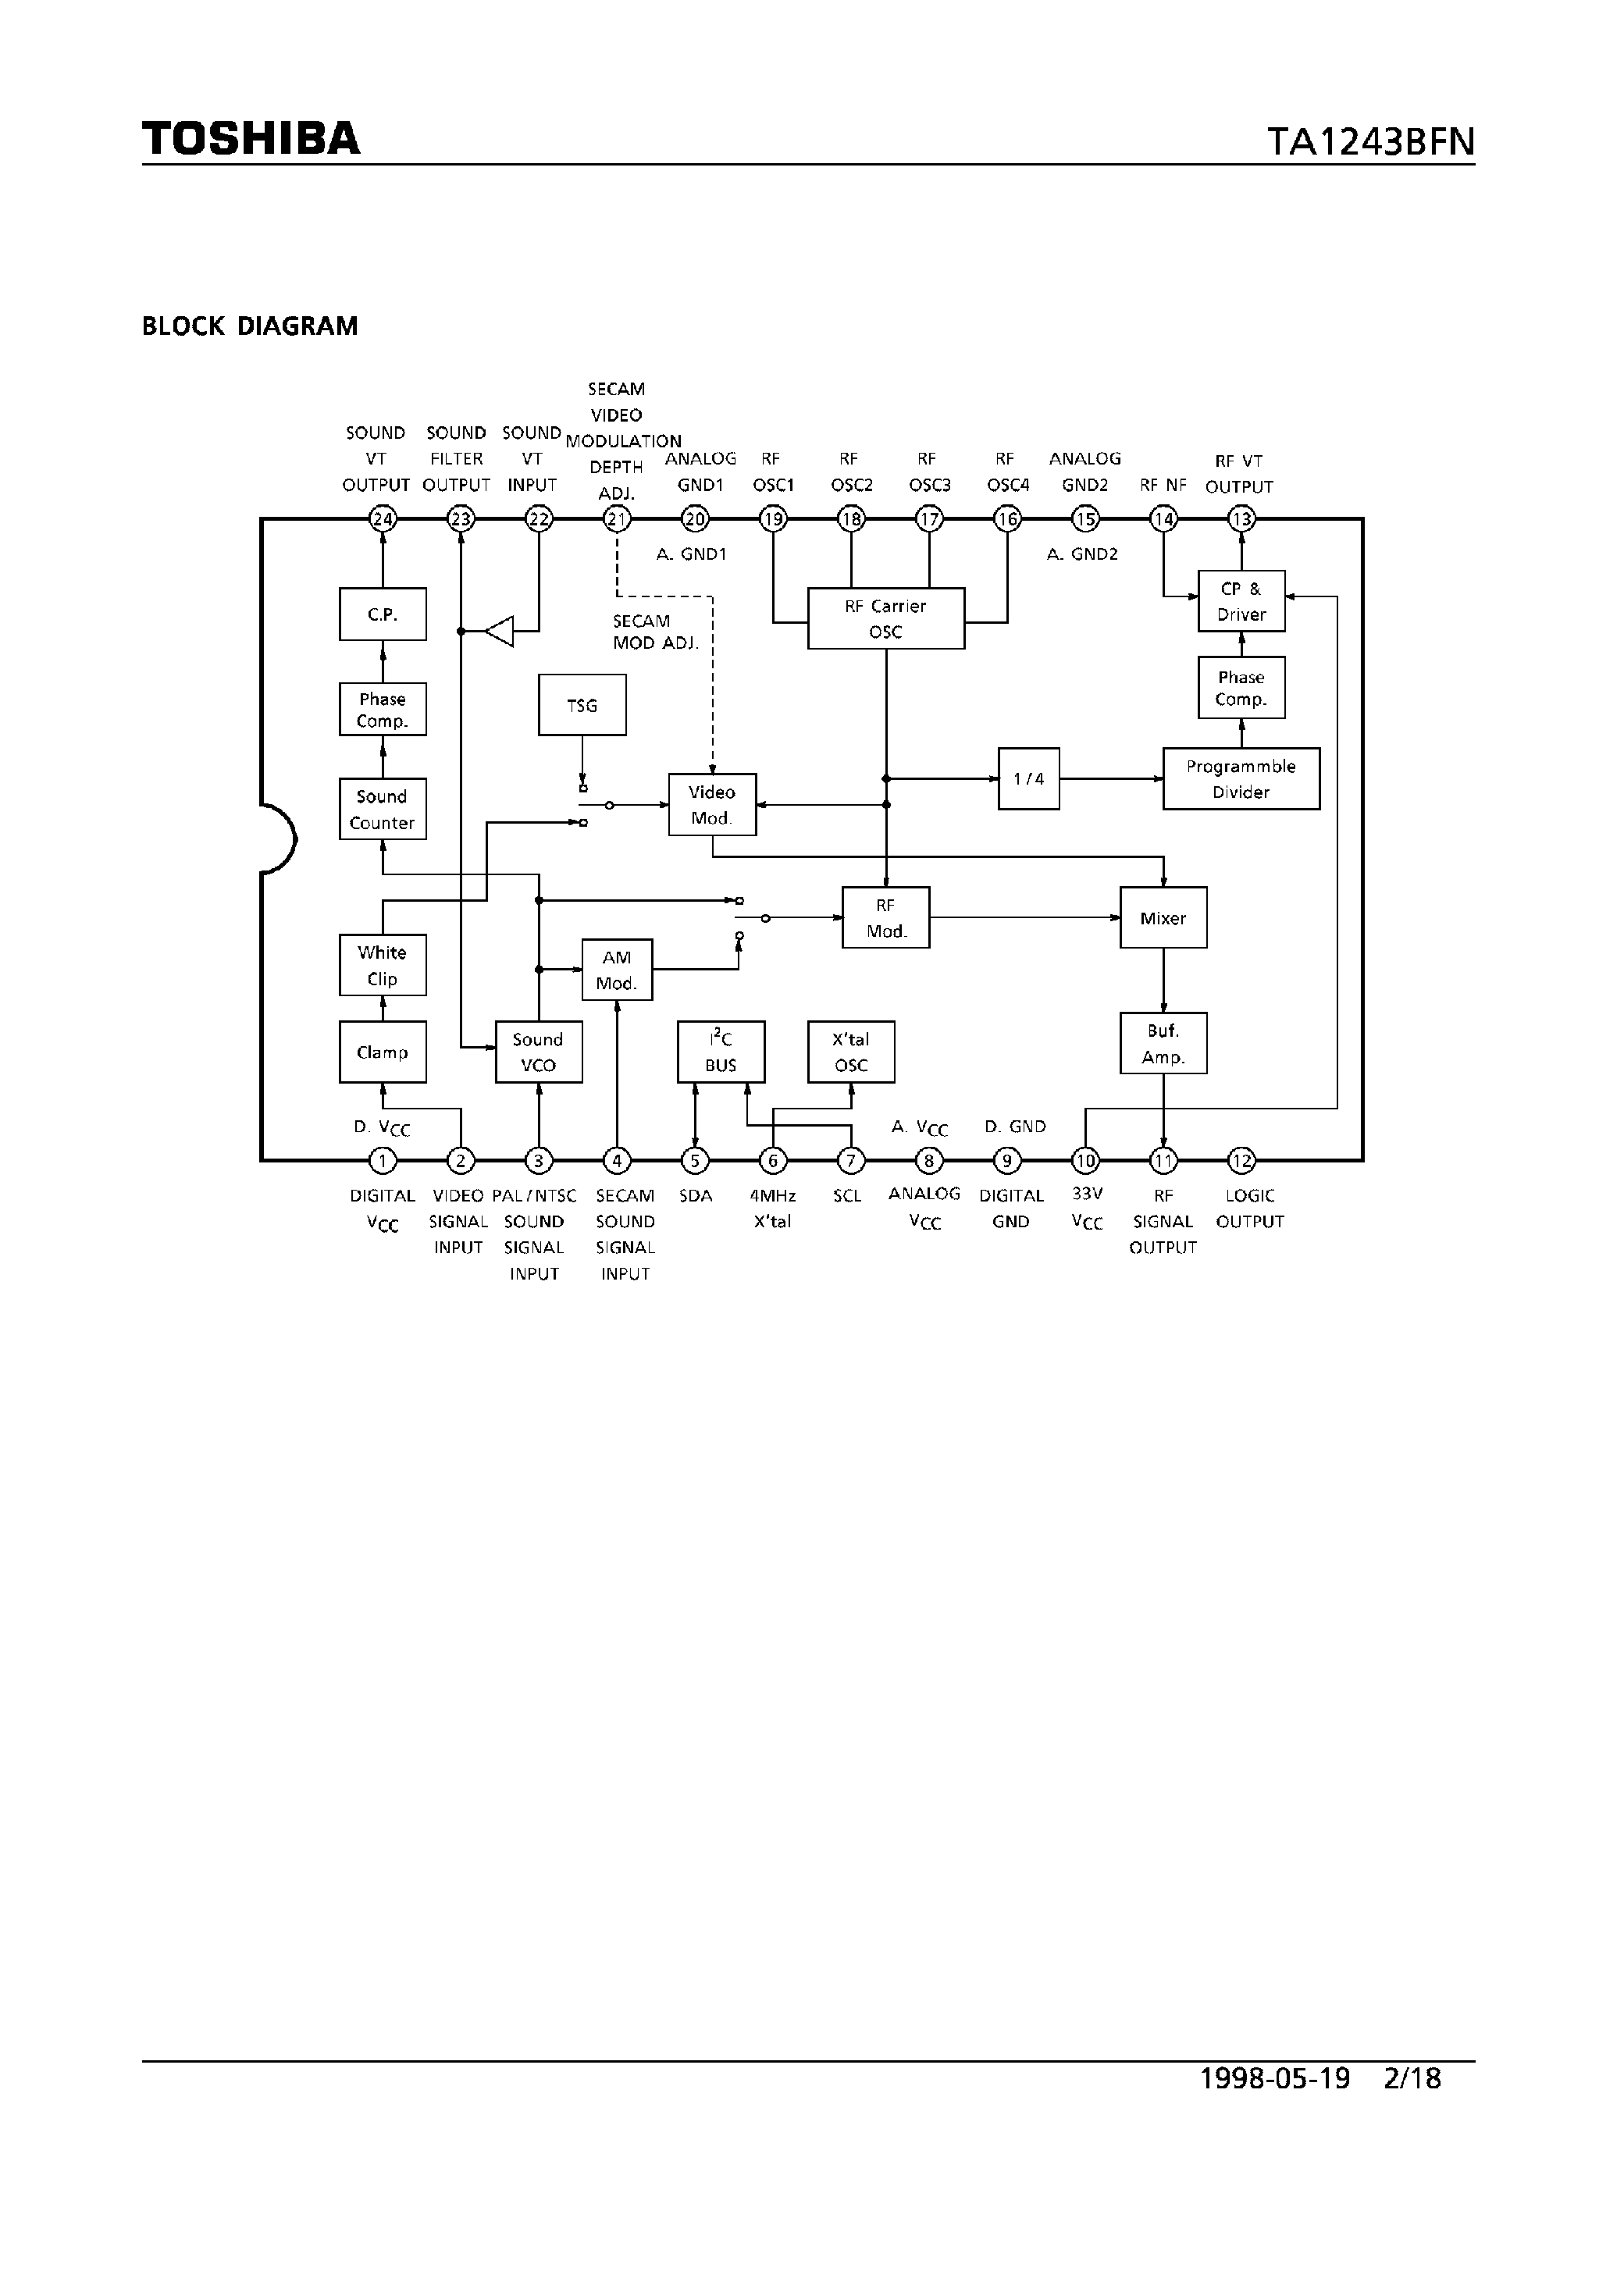 Datasheet TA1243BFN - RF MODULATOR FOR VCR page 2